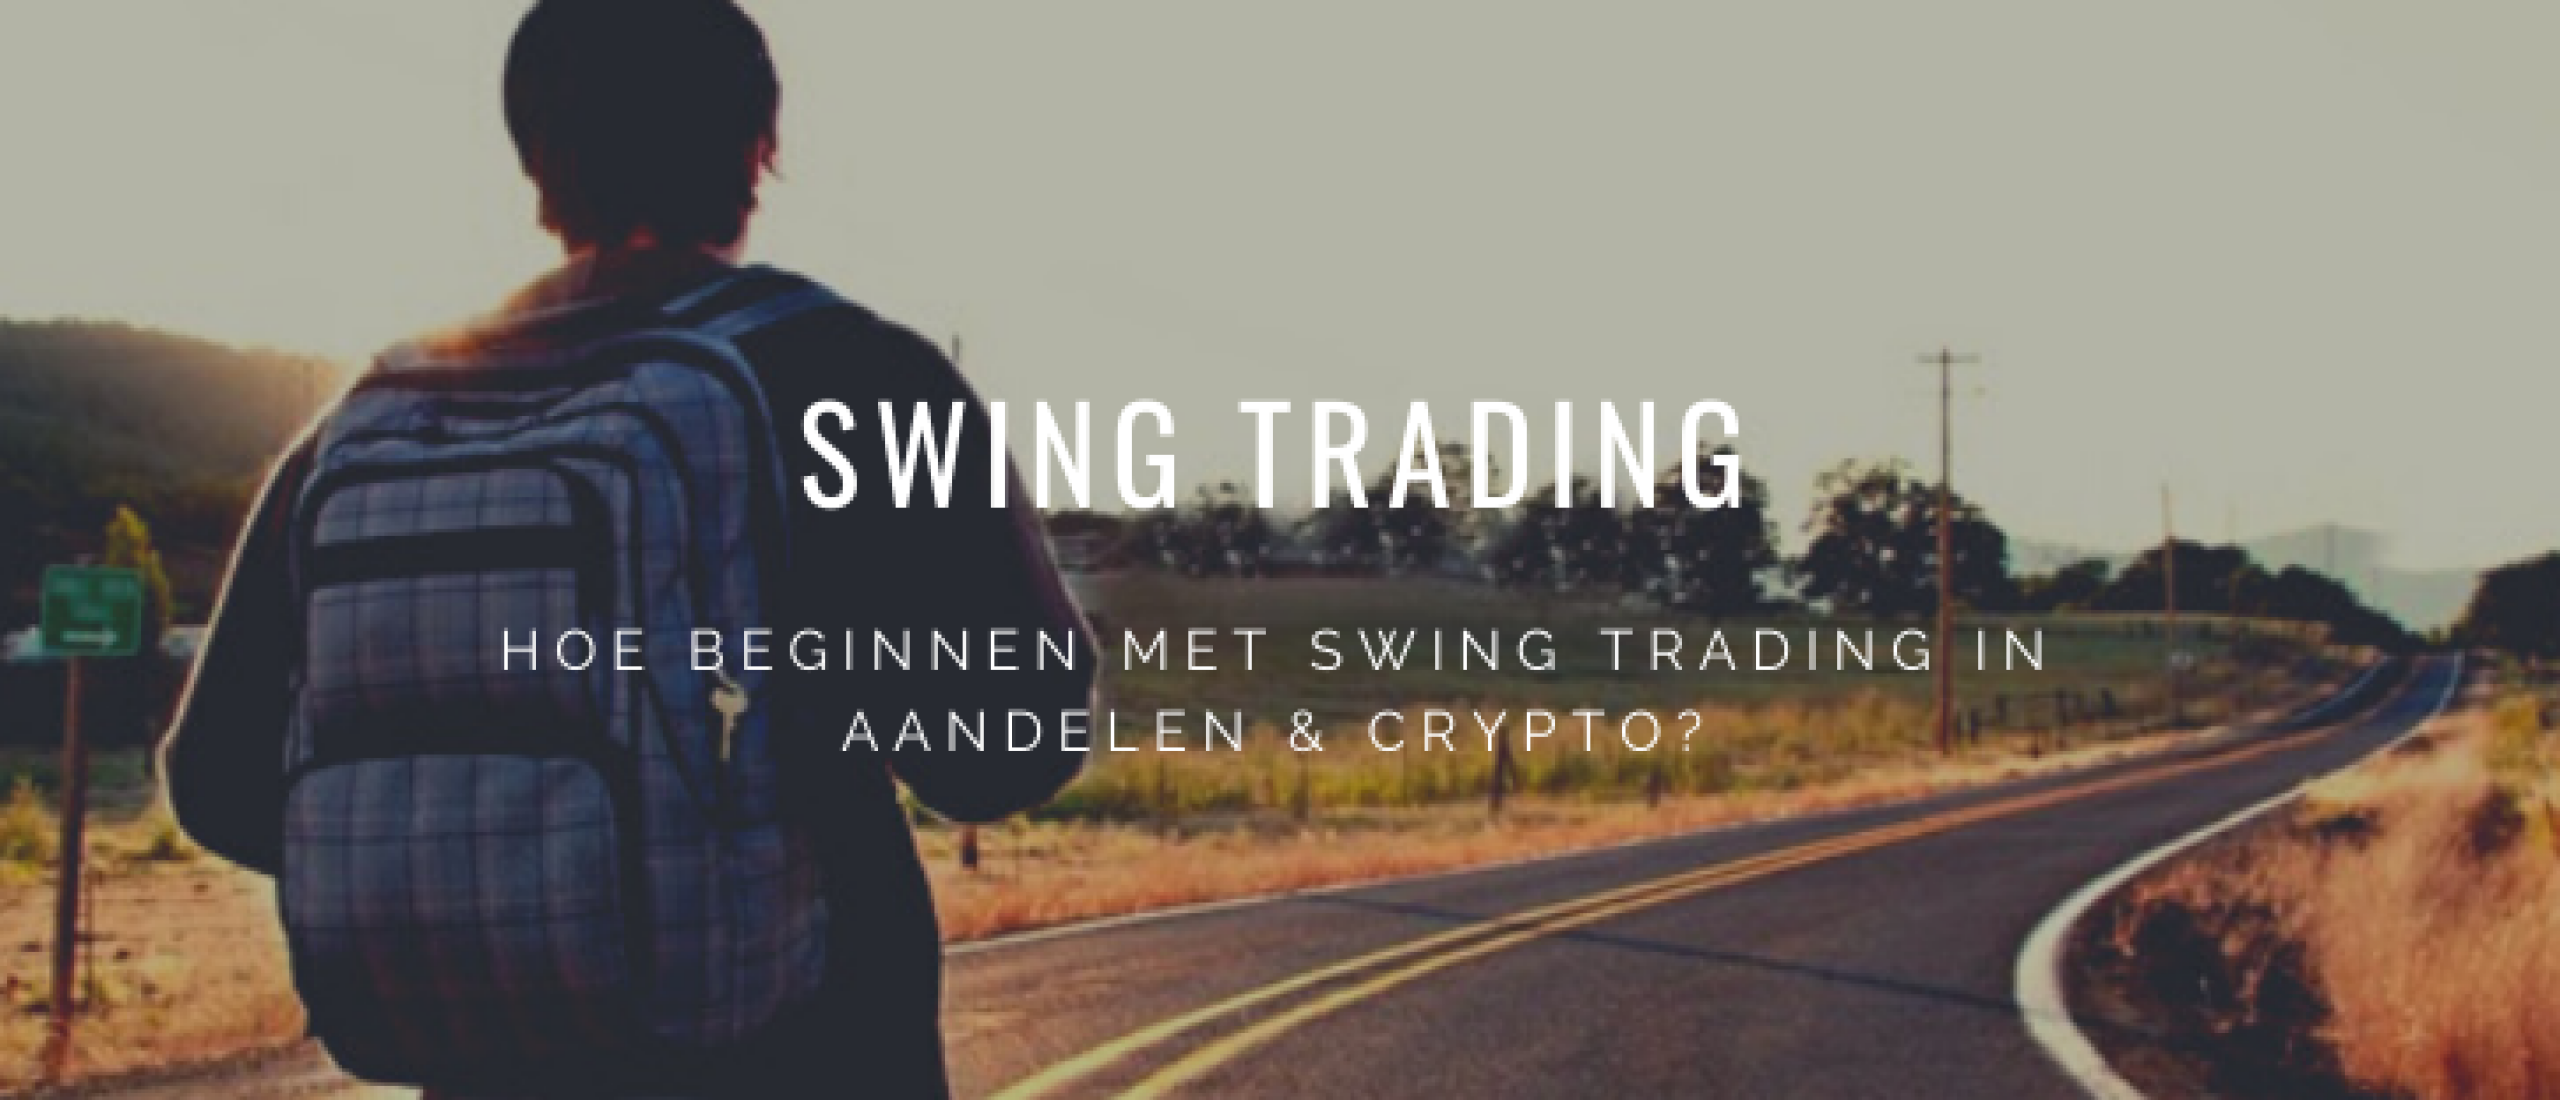 beginnen-met-swing-trading-tips